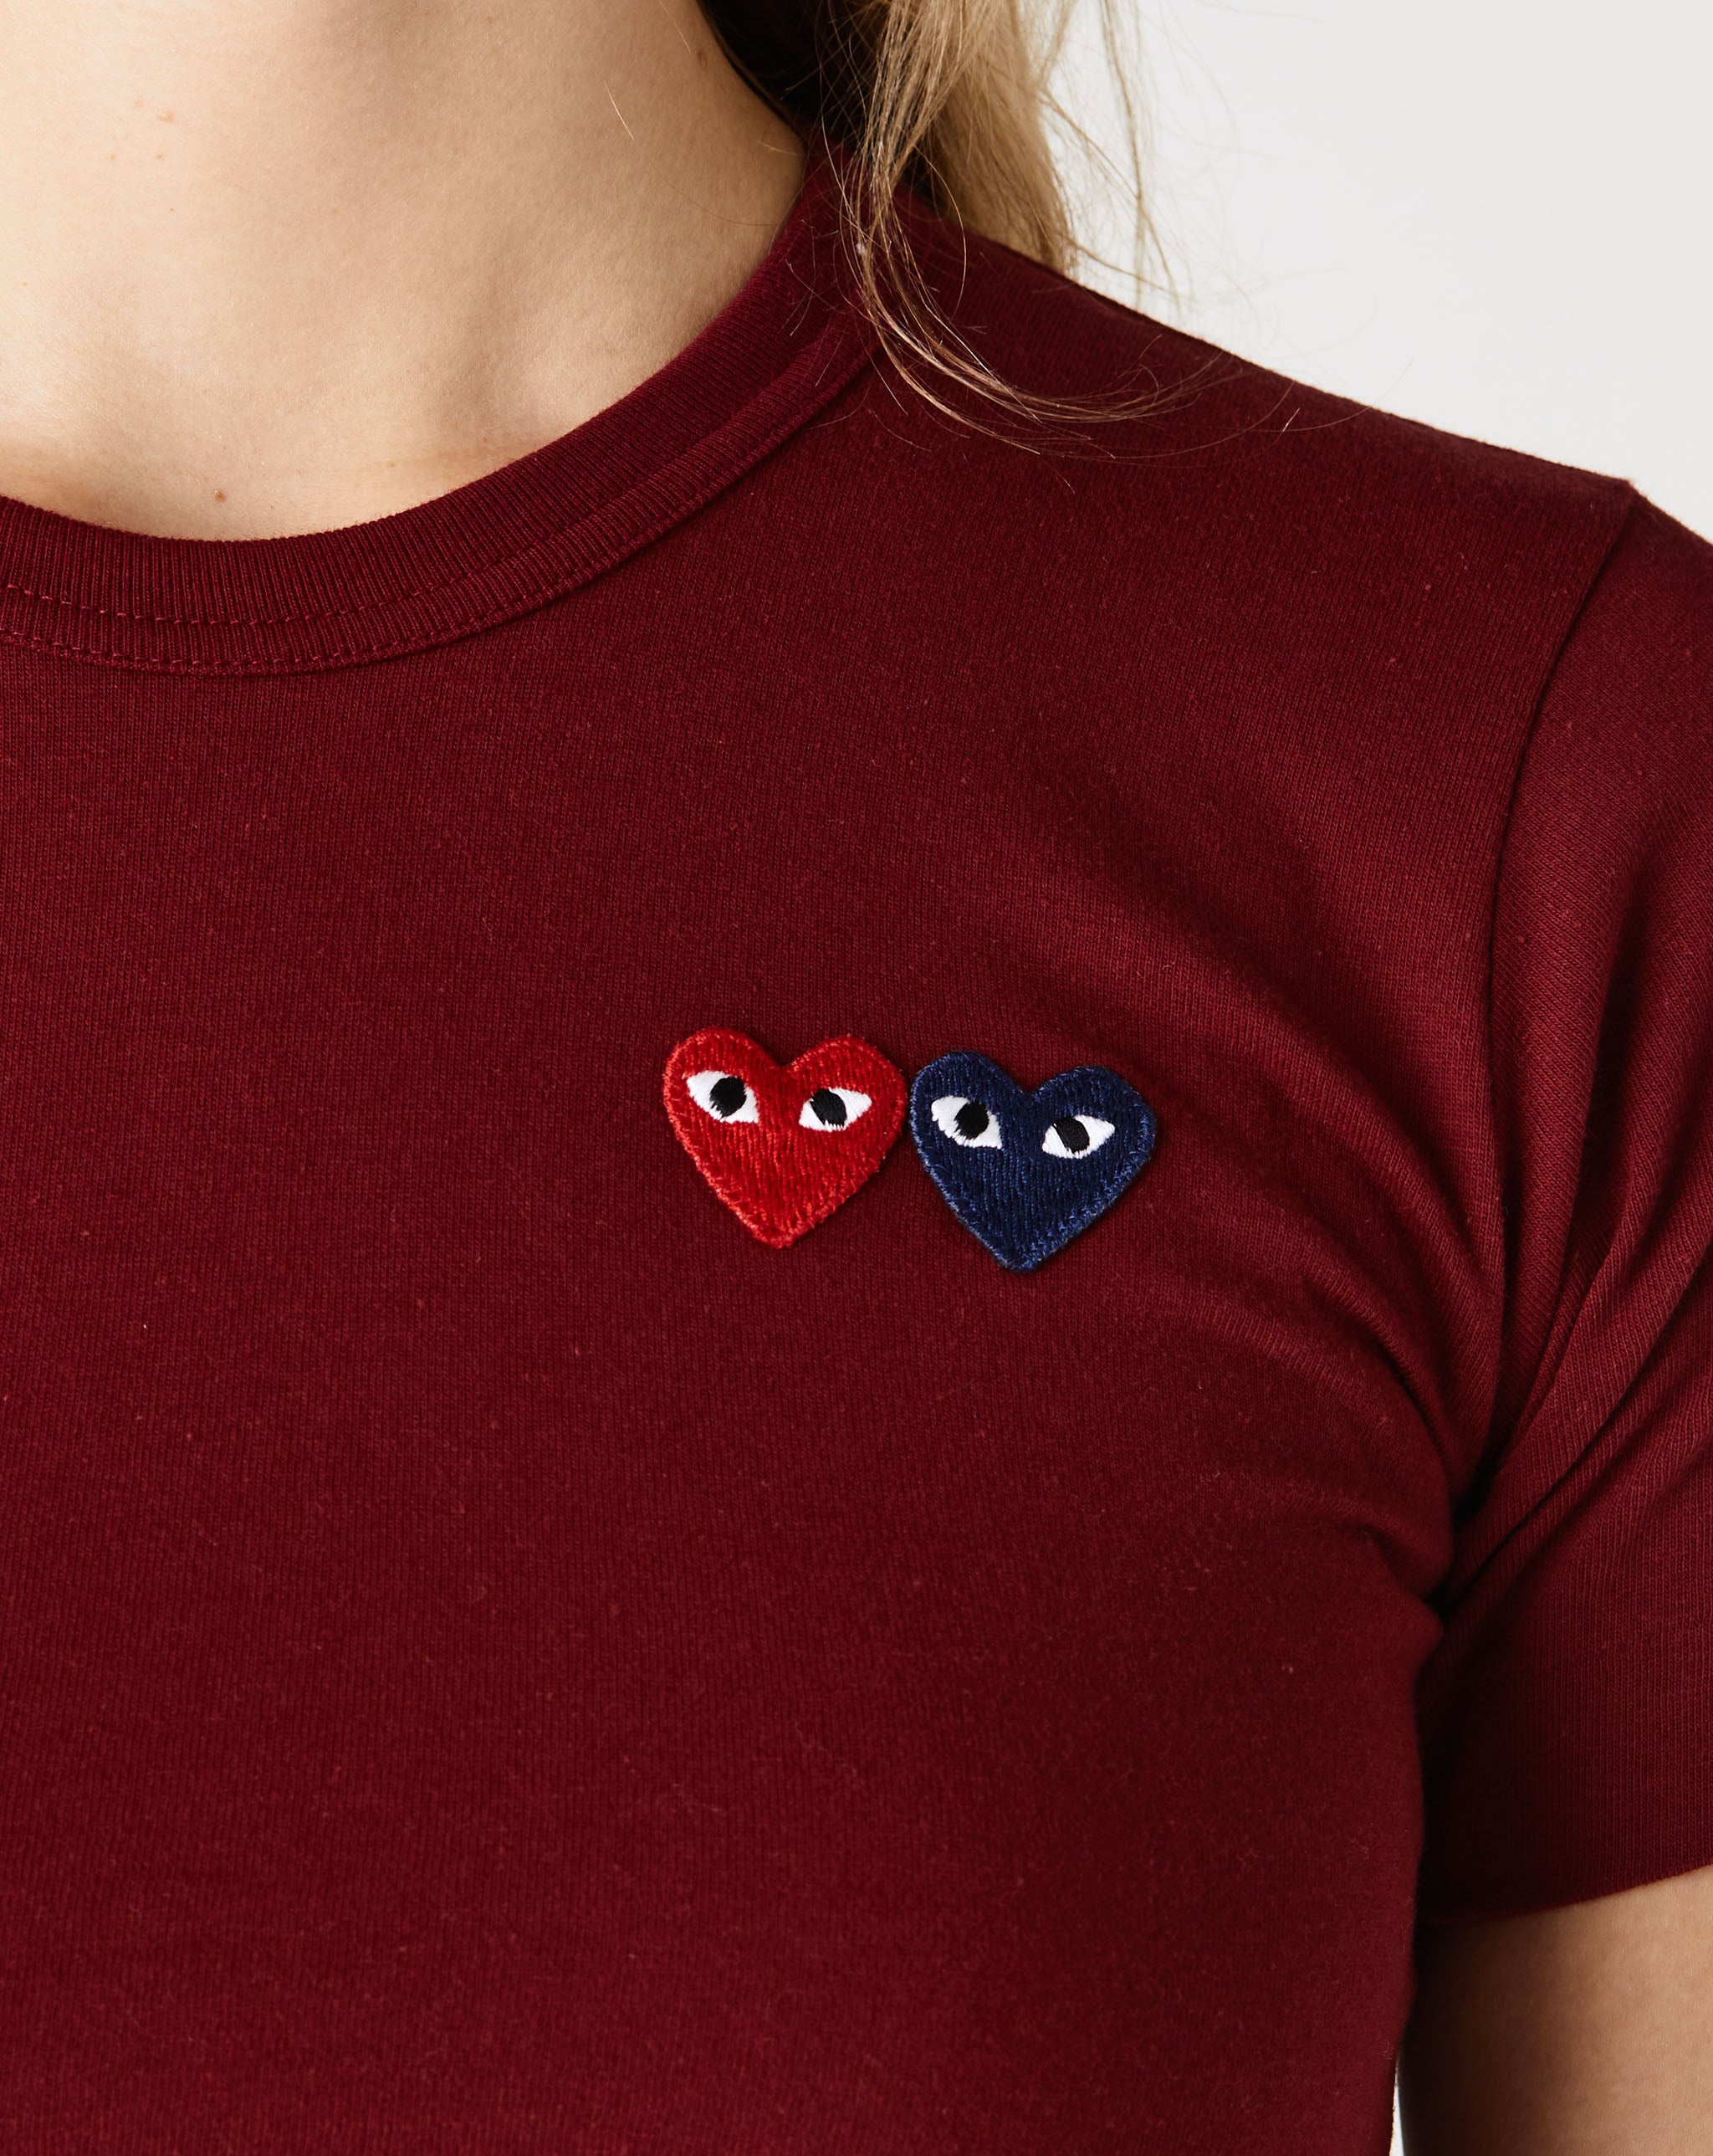 Womens Heart T-Shirt Women's Mini Heart T-Shirt  - Cheap Urlfreeze Jordan outlet